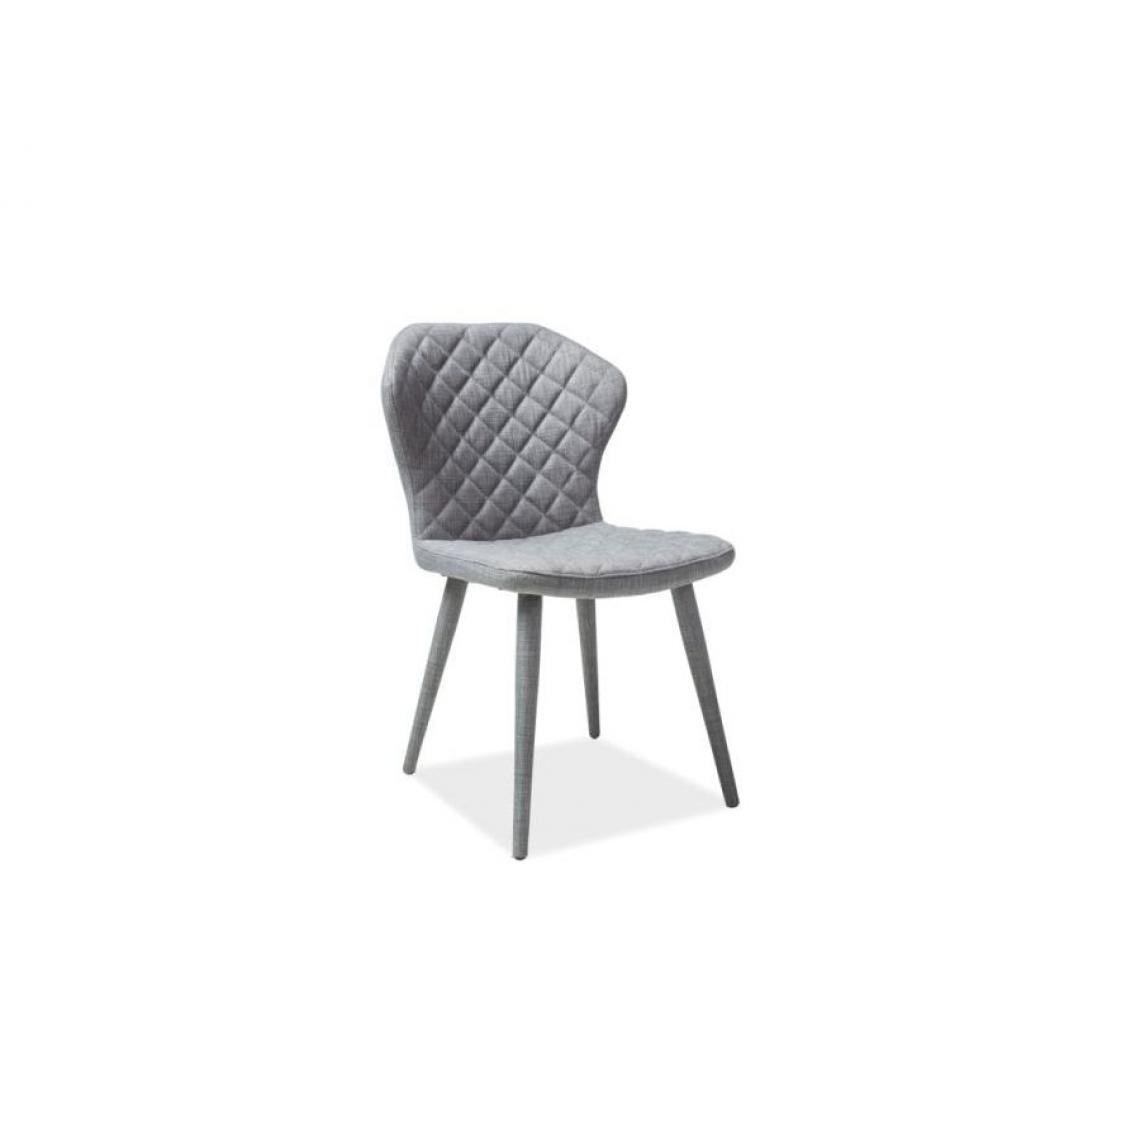 Hucoco - LONAN | Chaise avec dossier raffiné style glamour | 87x50x43 cm | Tissu haute qualité | Chaise salle à manger/salon/bureau - Gris - Chaises